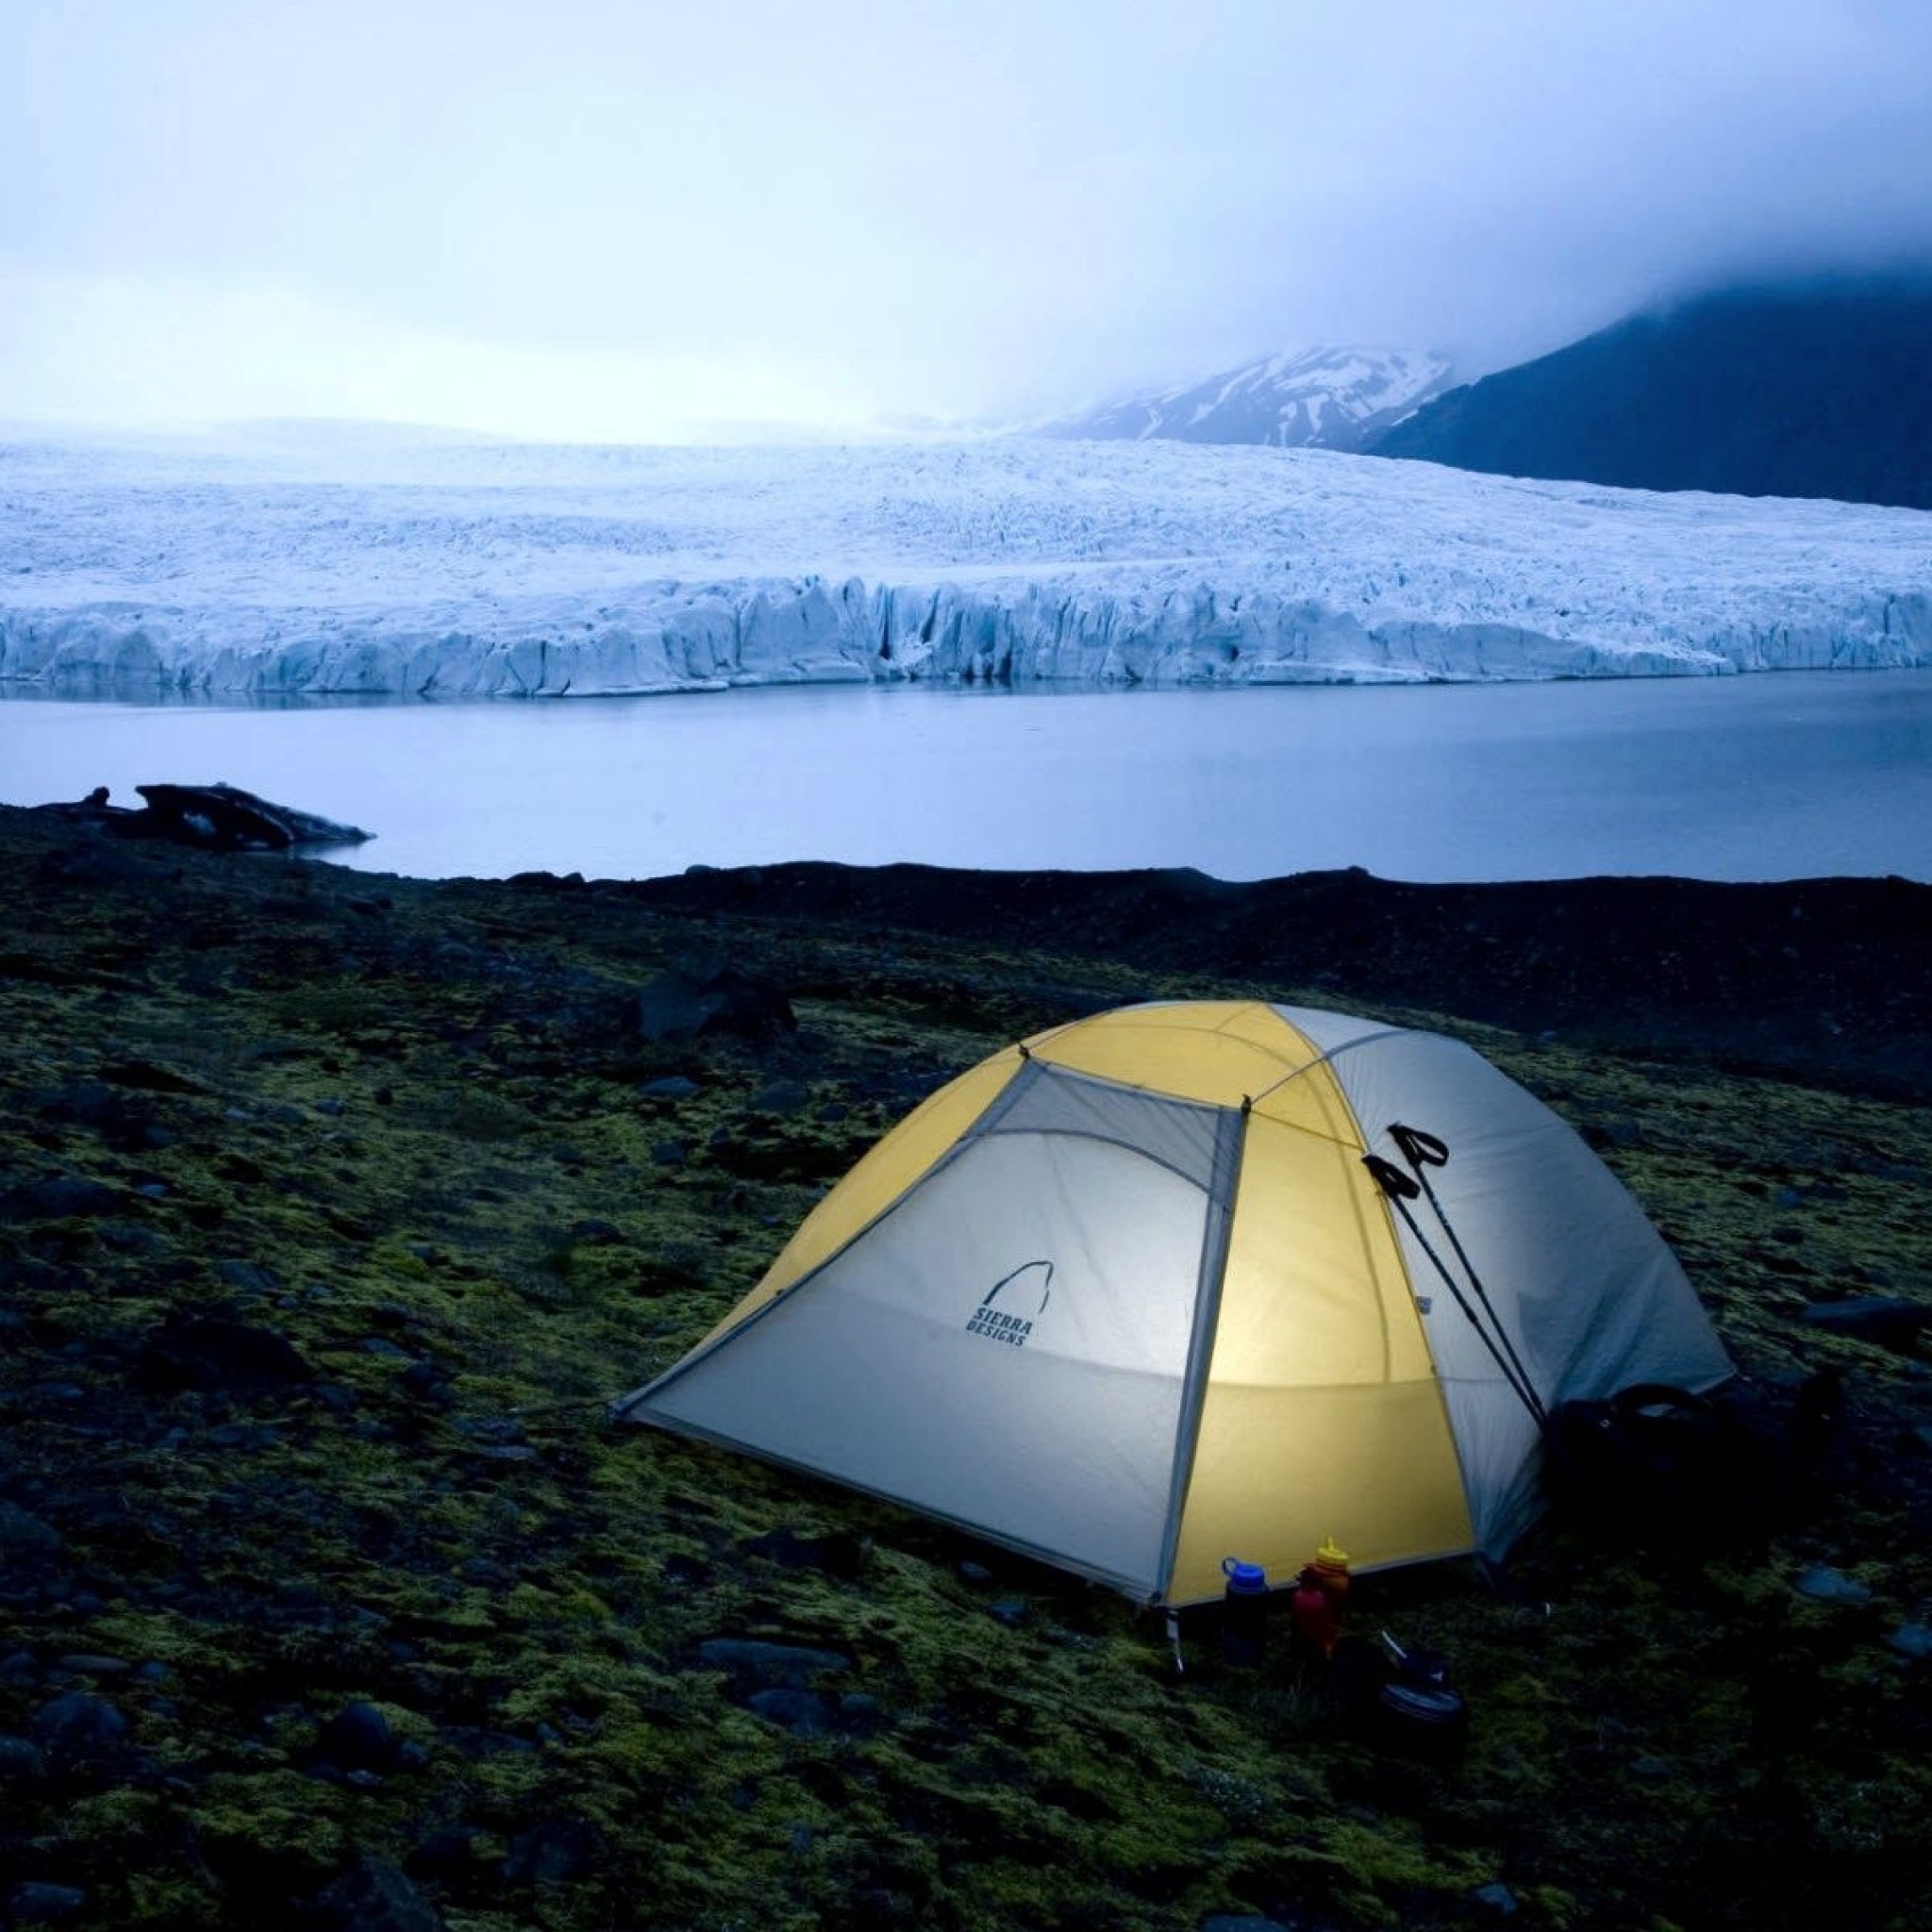 World キャンプ アイスランド国立公園 無料壁紙高画質 Ipad タブレット壁紙ギャラリー